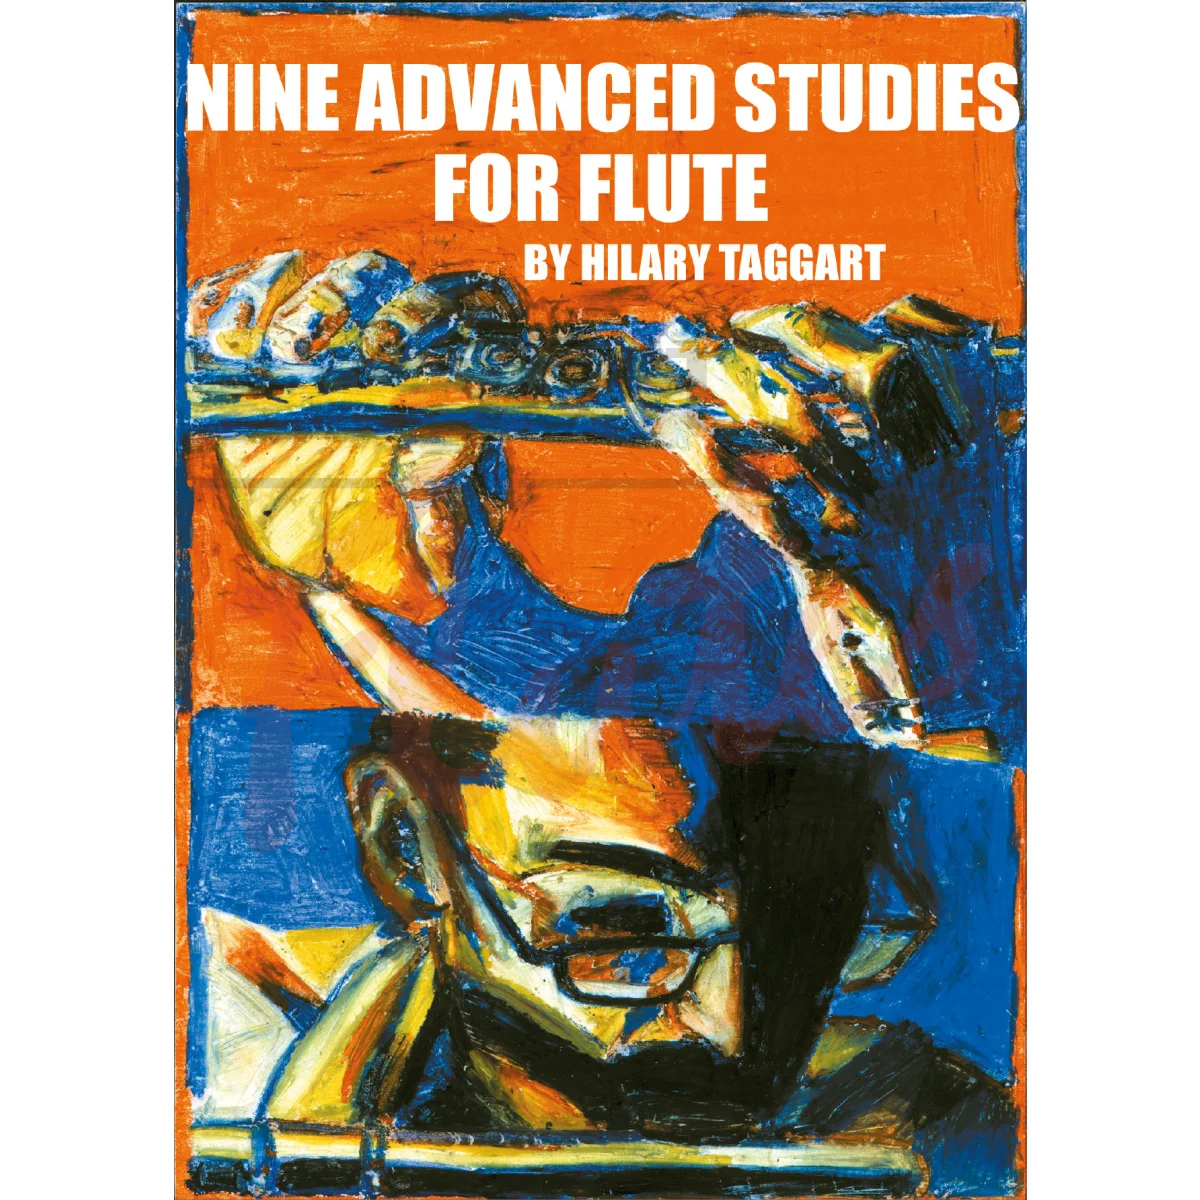 Nine Advanced Studies for Flute